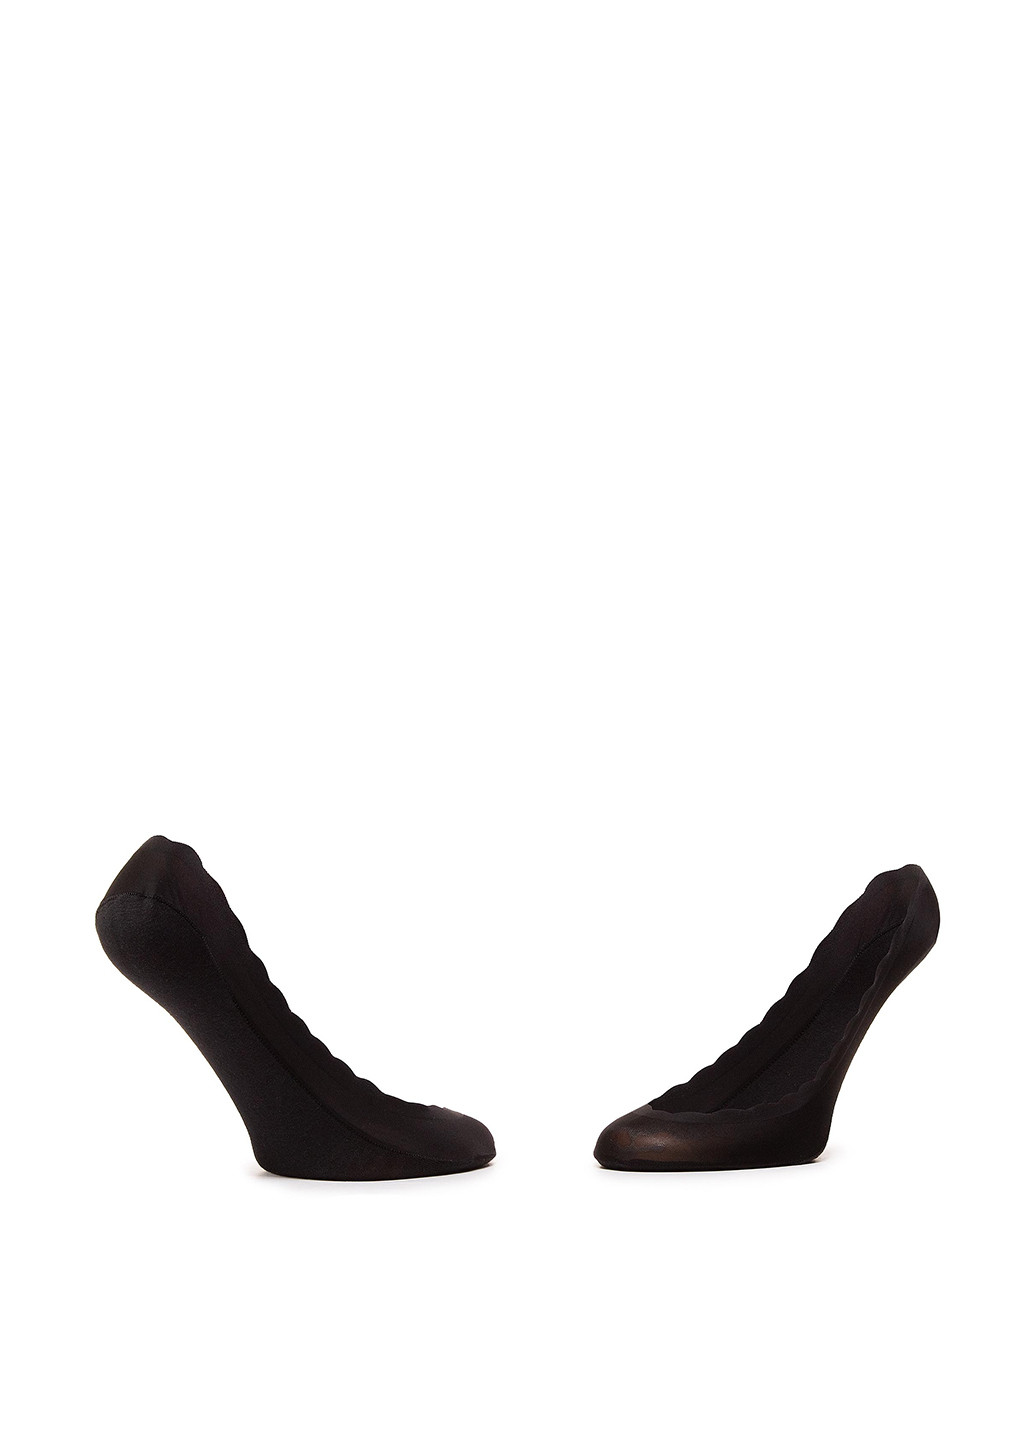 Шкарпетки жіночі 1WB-002-SS21 Accessories однотонные комбинированные повседневные